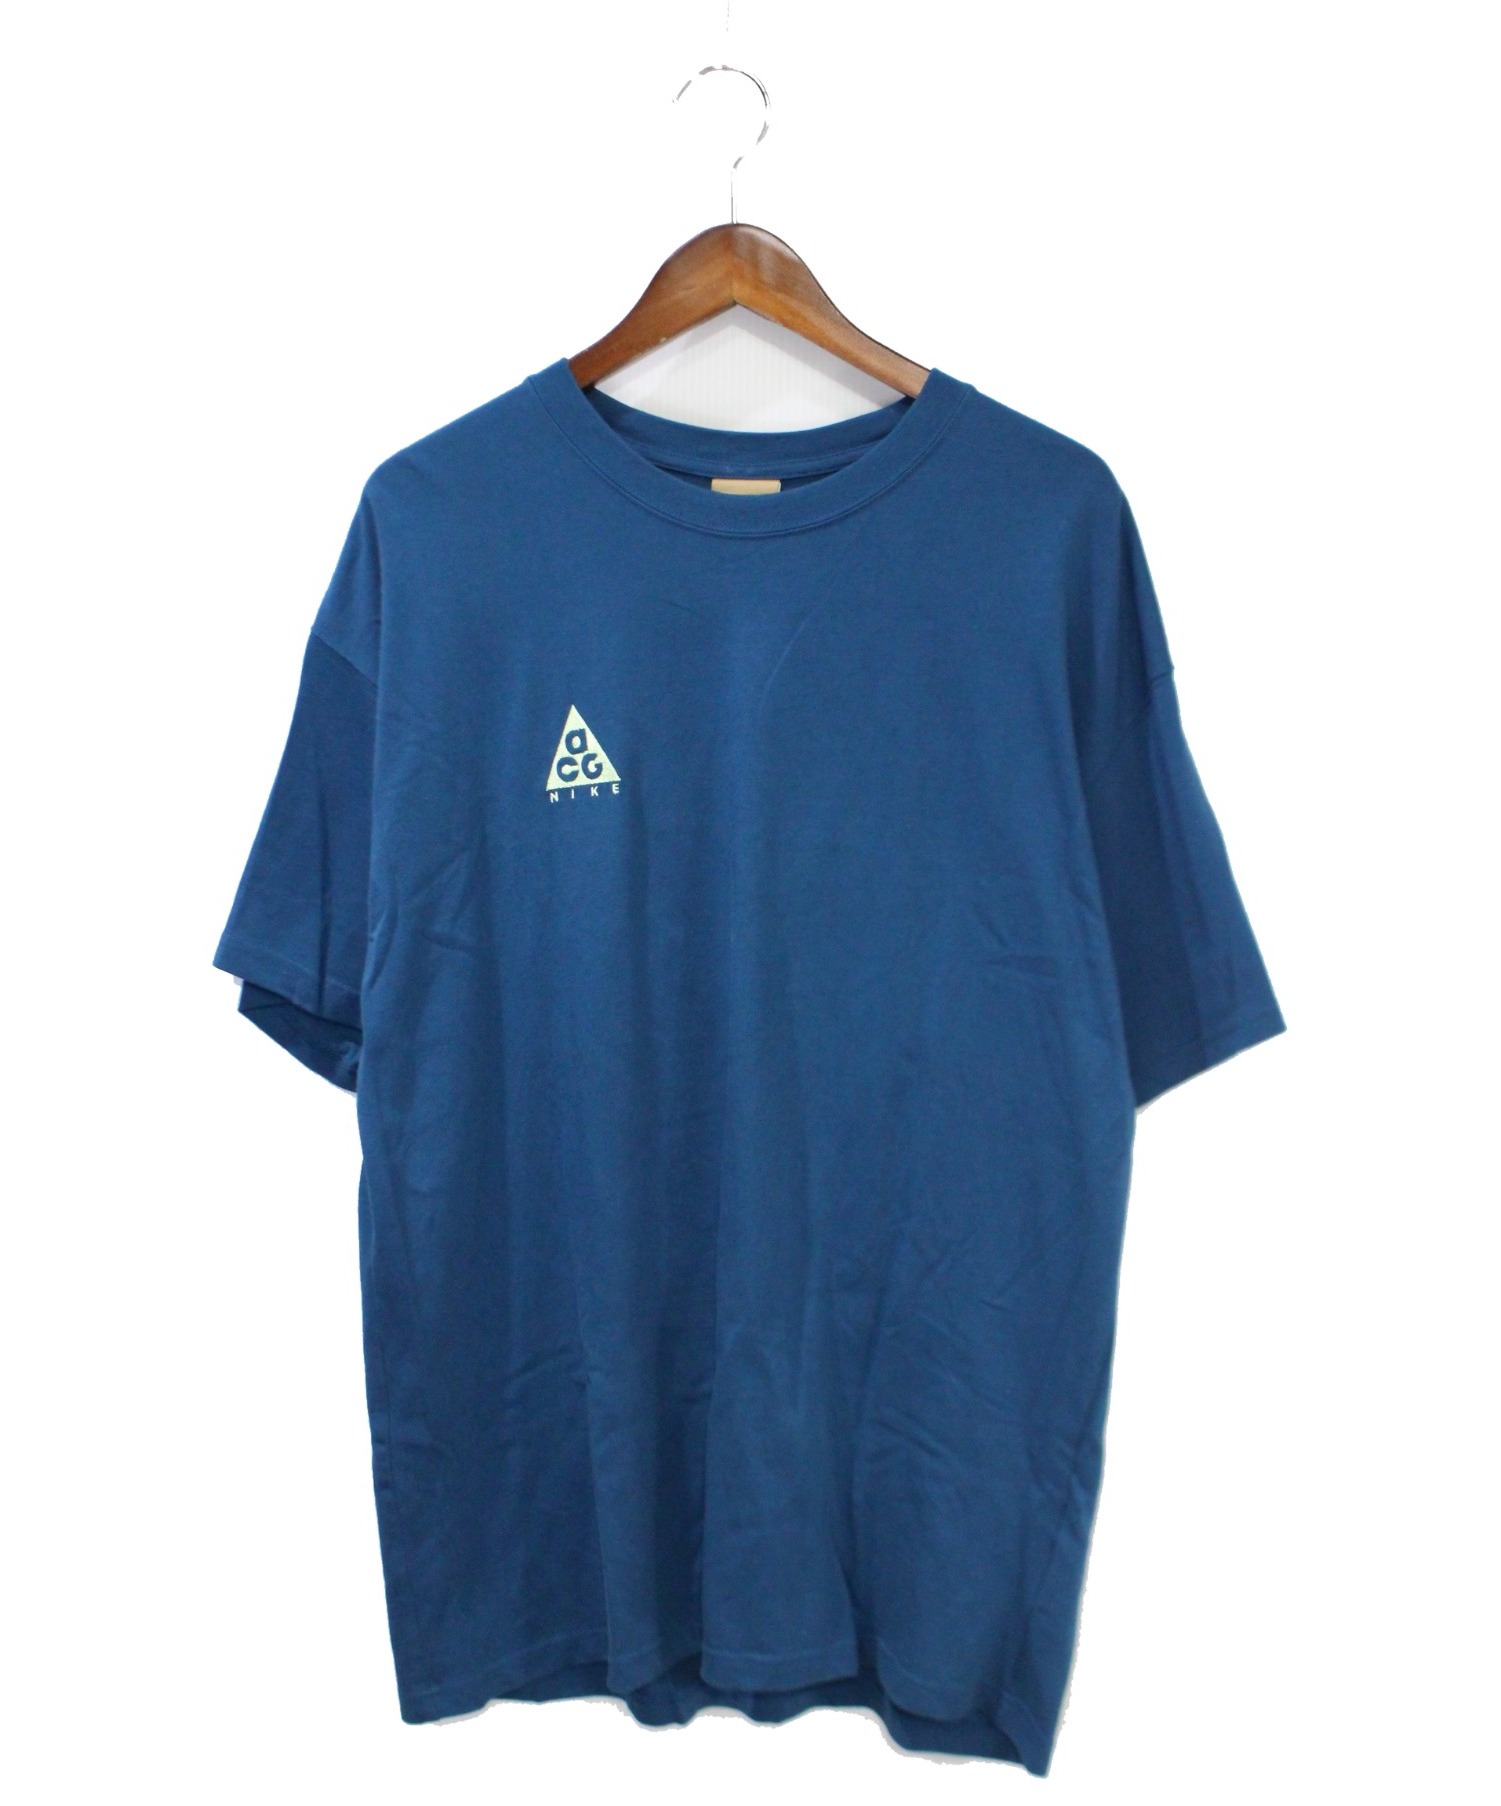 NIKE ACG (ナイキエーシージー) Tシャツ ネイビー サイズ:M